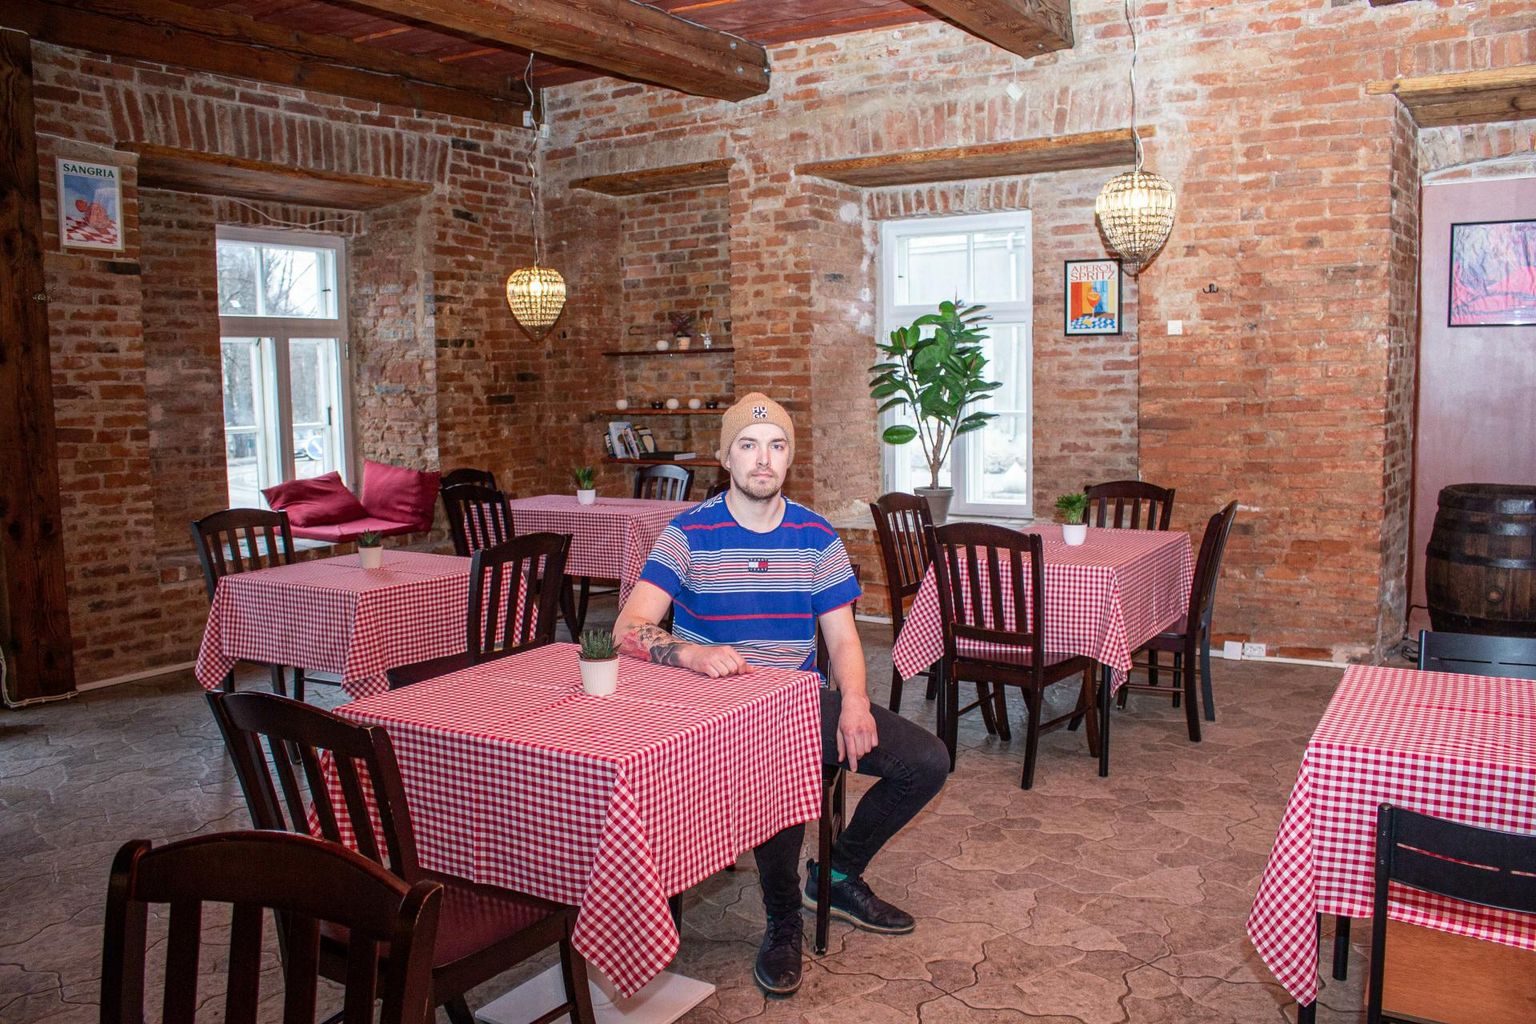 Varem mitmes mainekas restoranis koka ja peakokana töötanud Randel Malm avas oma endises kodulinnas Tõrvas pitsarestorani Malmizza.